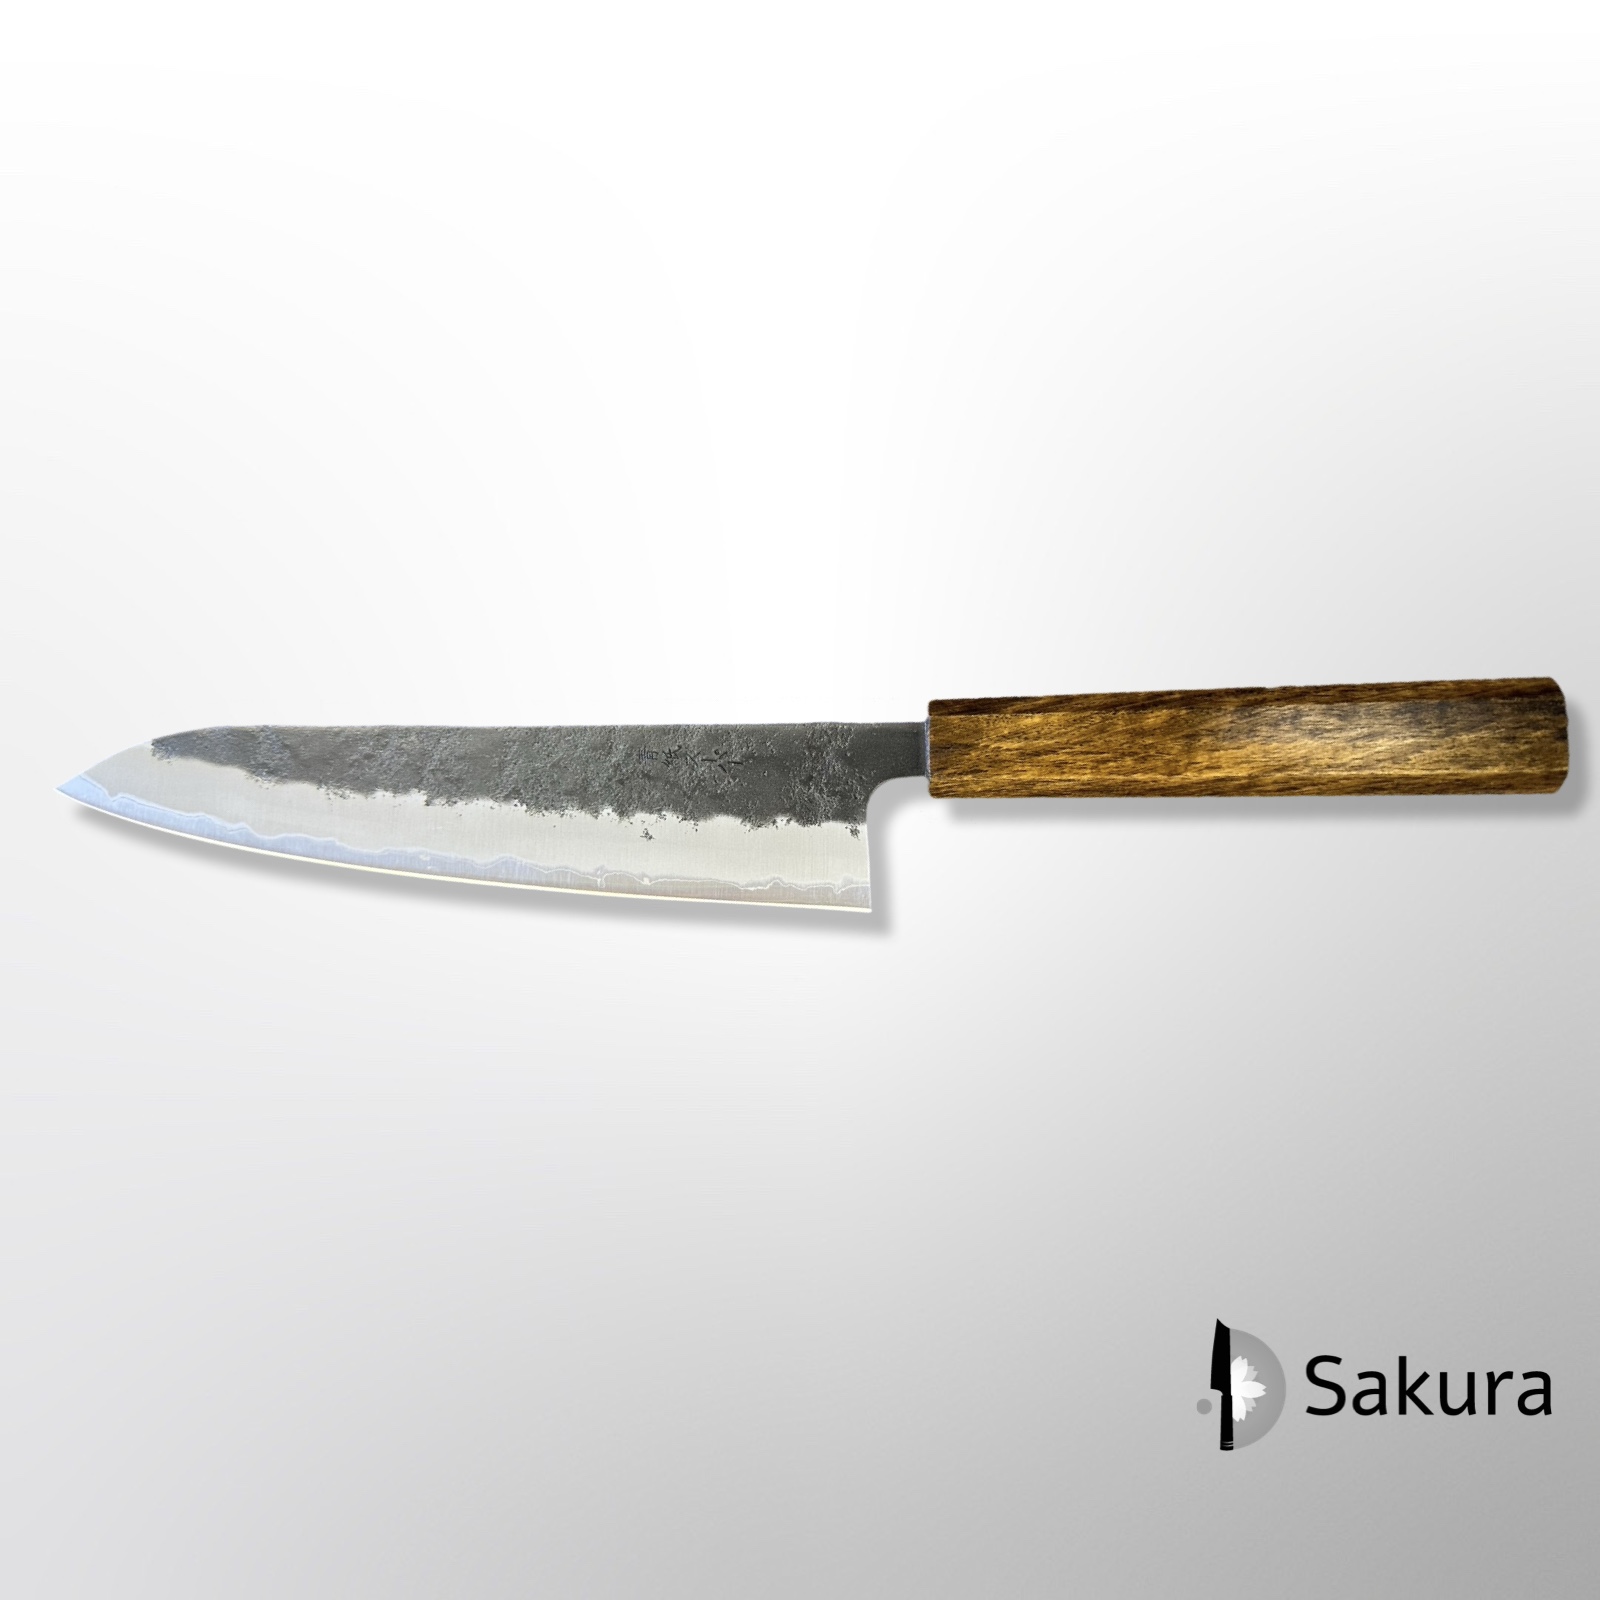 סכין שף רב-תכליתית גיוטו 210מ״מ פלדת פחמן Aogami-Super עטופה פלדת אל-חלד גימור קוראוצ׳י ידית אחיזה מסורתית עץ אלון שחור ŌUL Sakai יפן [SKFUKU236261 -18]